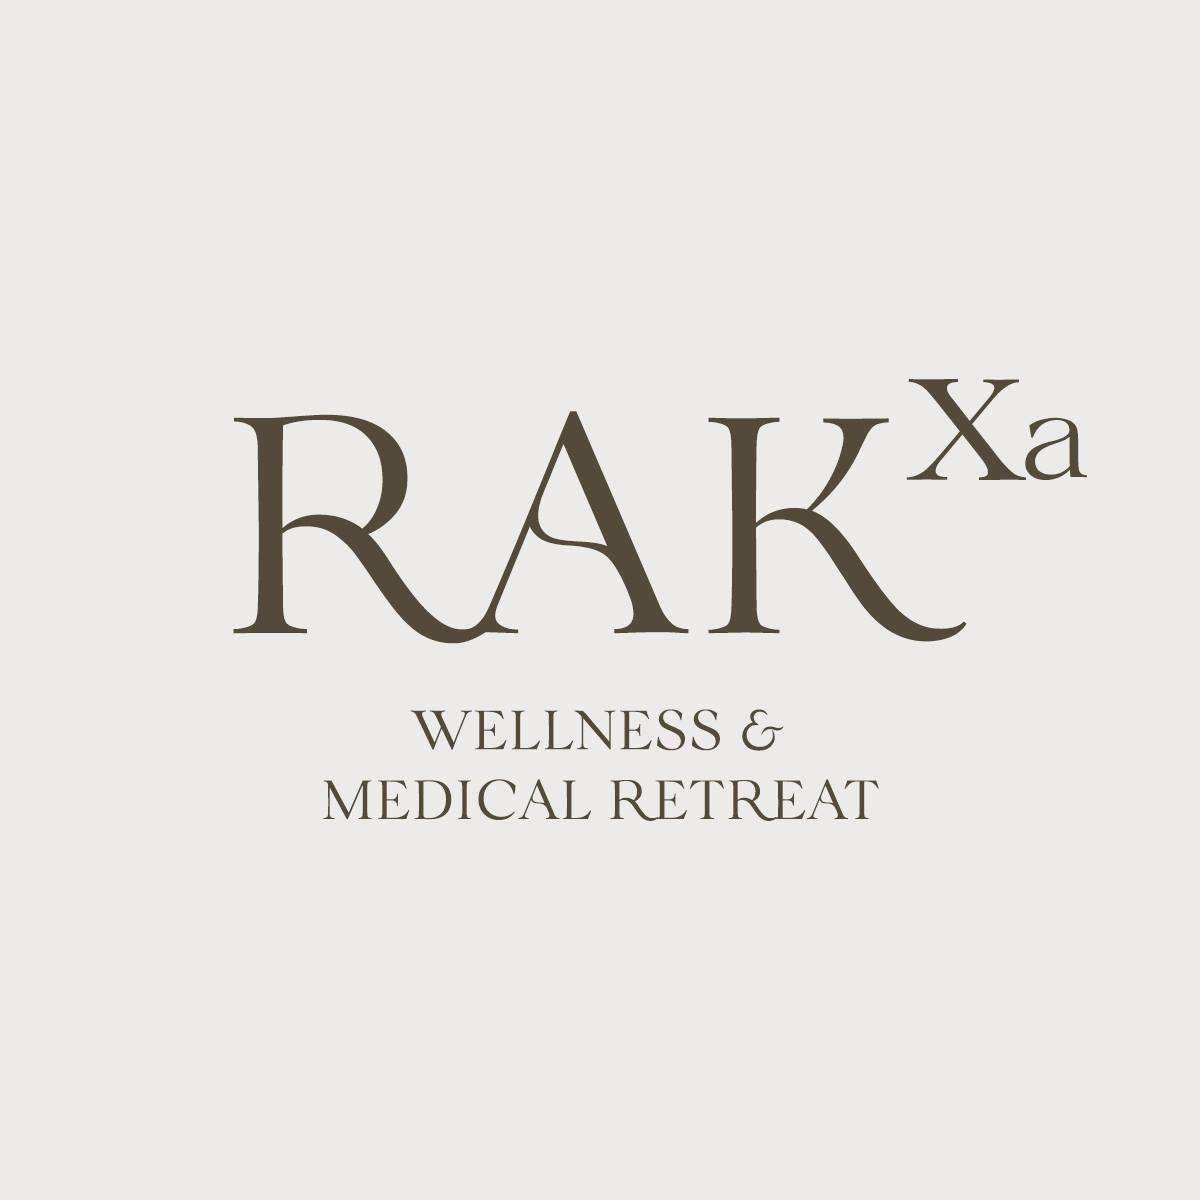 RAKxa Wellness